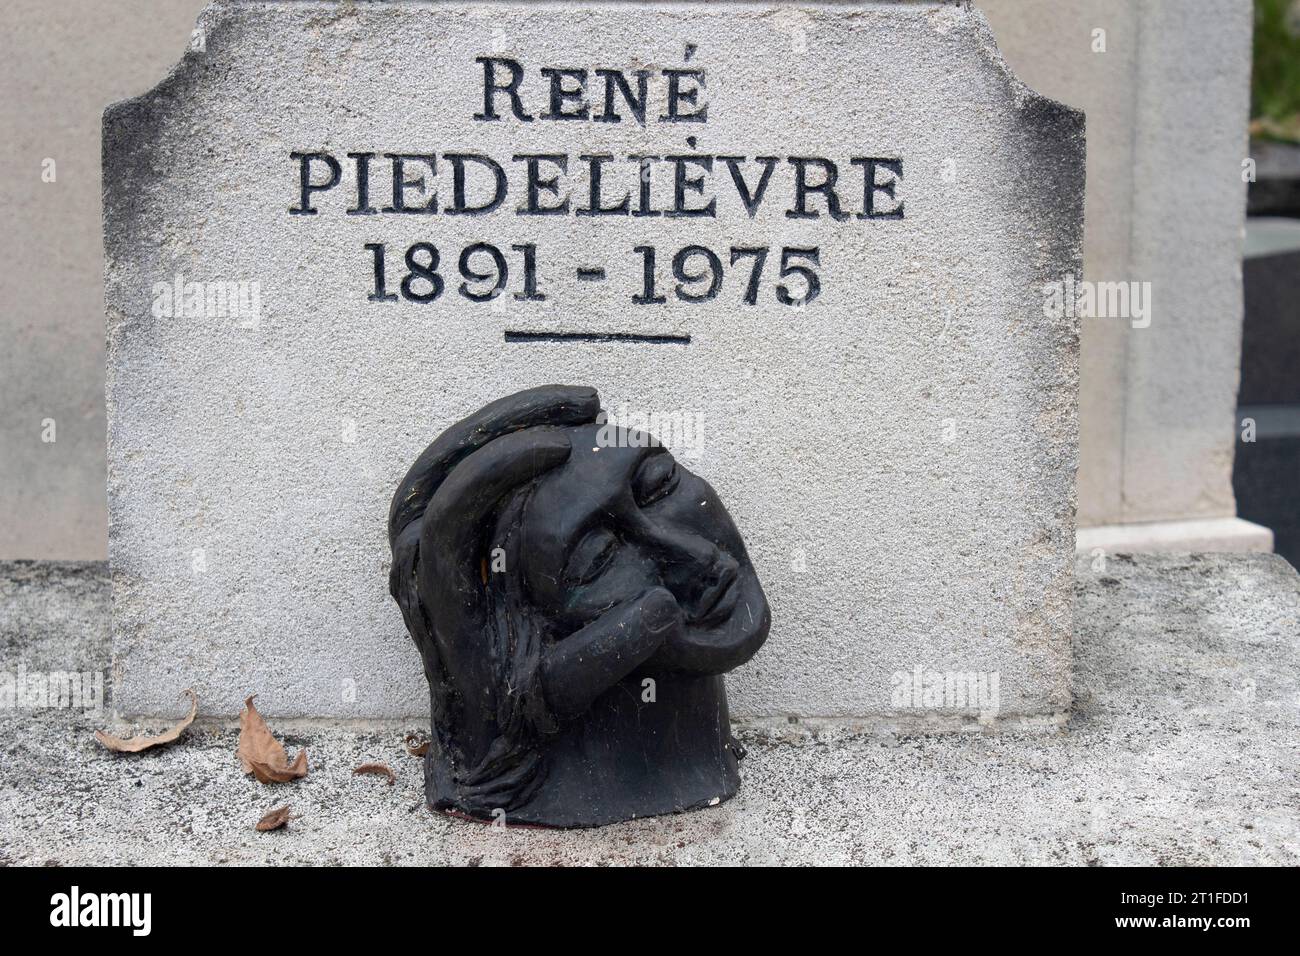 La tombe du juriste et universitaire français René Piedelièvre au cimetière Montparnasse - Cimetière du Montparnasse 14e arrondissement Paris France Banque D'Images